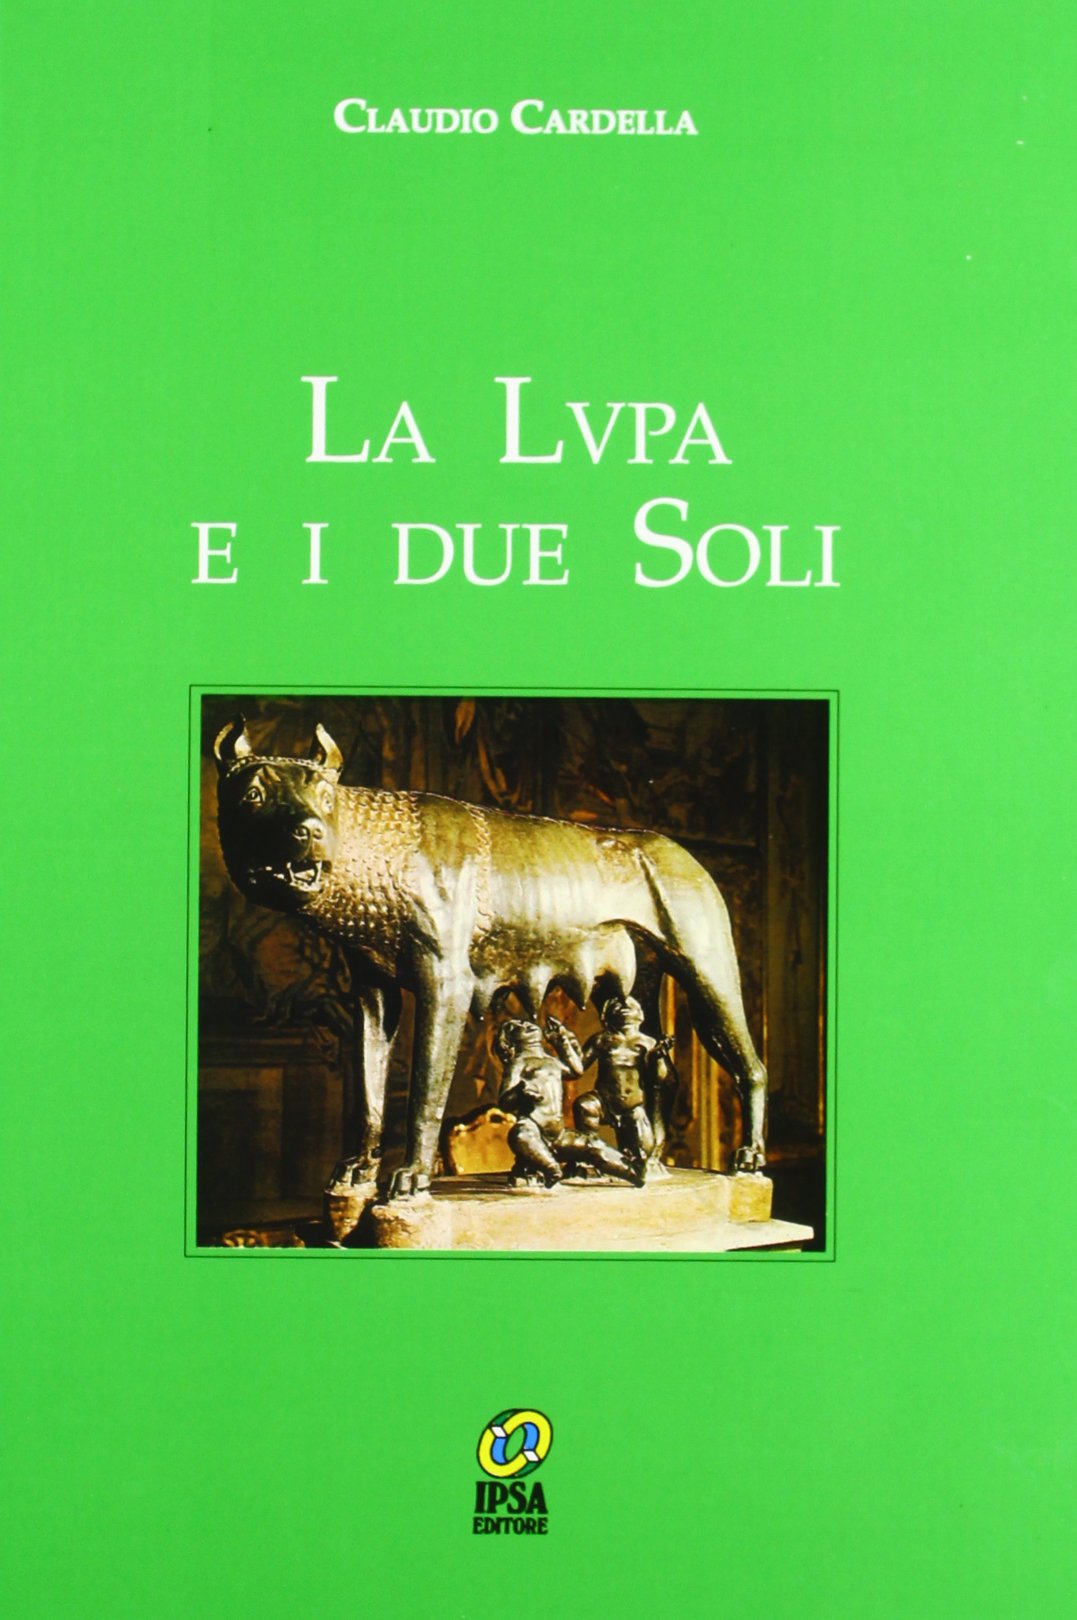 Libri Claudio Cardella - La Lupa E I Due Soli NUOVO SIGILLATO, EDIZIONE DEL 01/01/1997 SUBITO DISPONIBILE